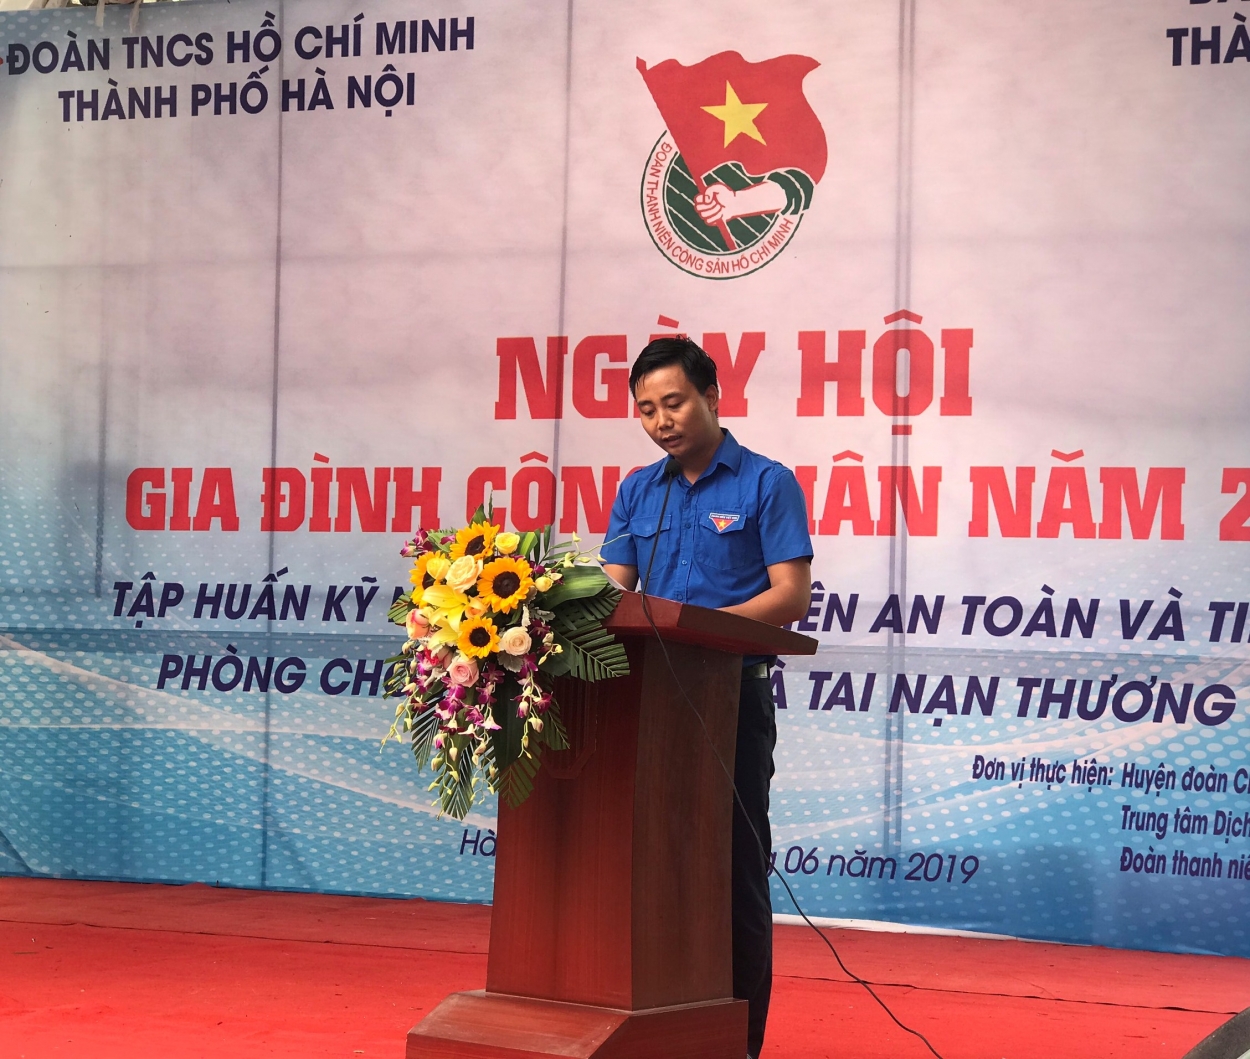 Đồng chí Nguyễn Đức Tiến, Phó Bí thư Thành đoàn Hà Nội phát biểu khai mạc Ngày hội